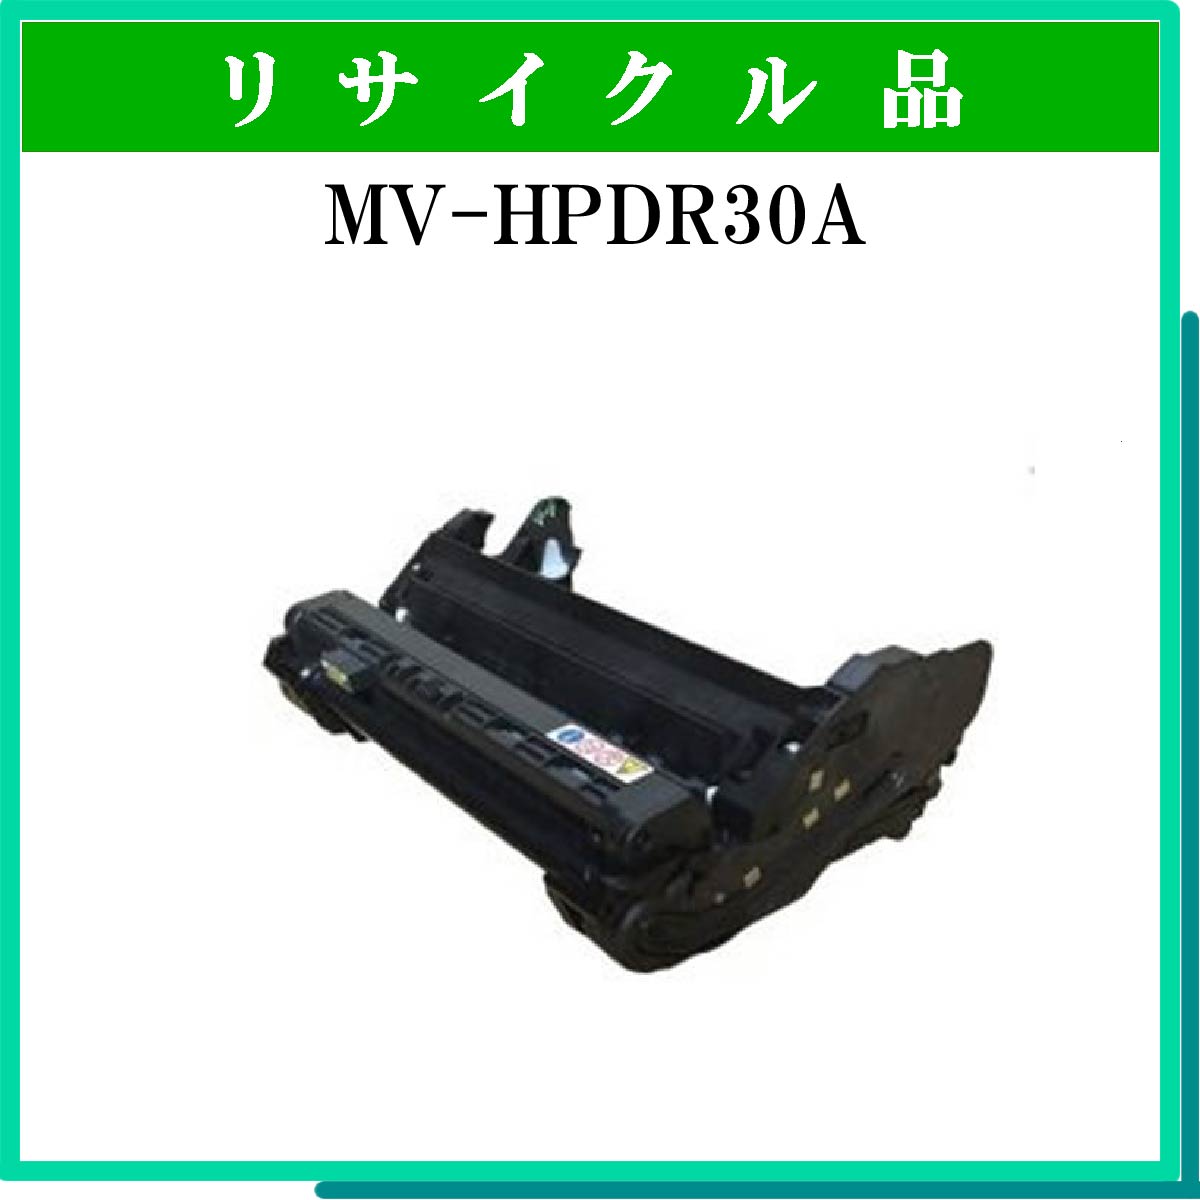 MV-HPDR30A